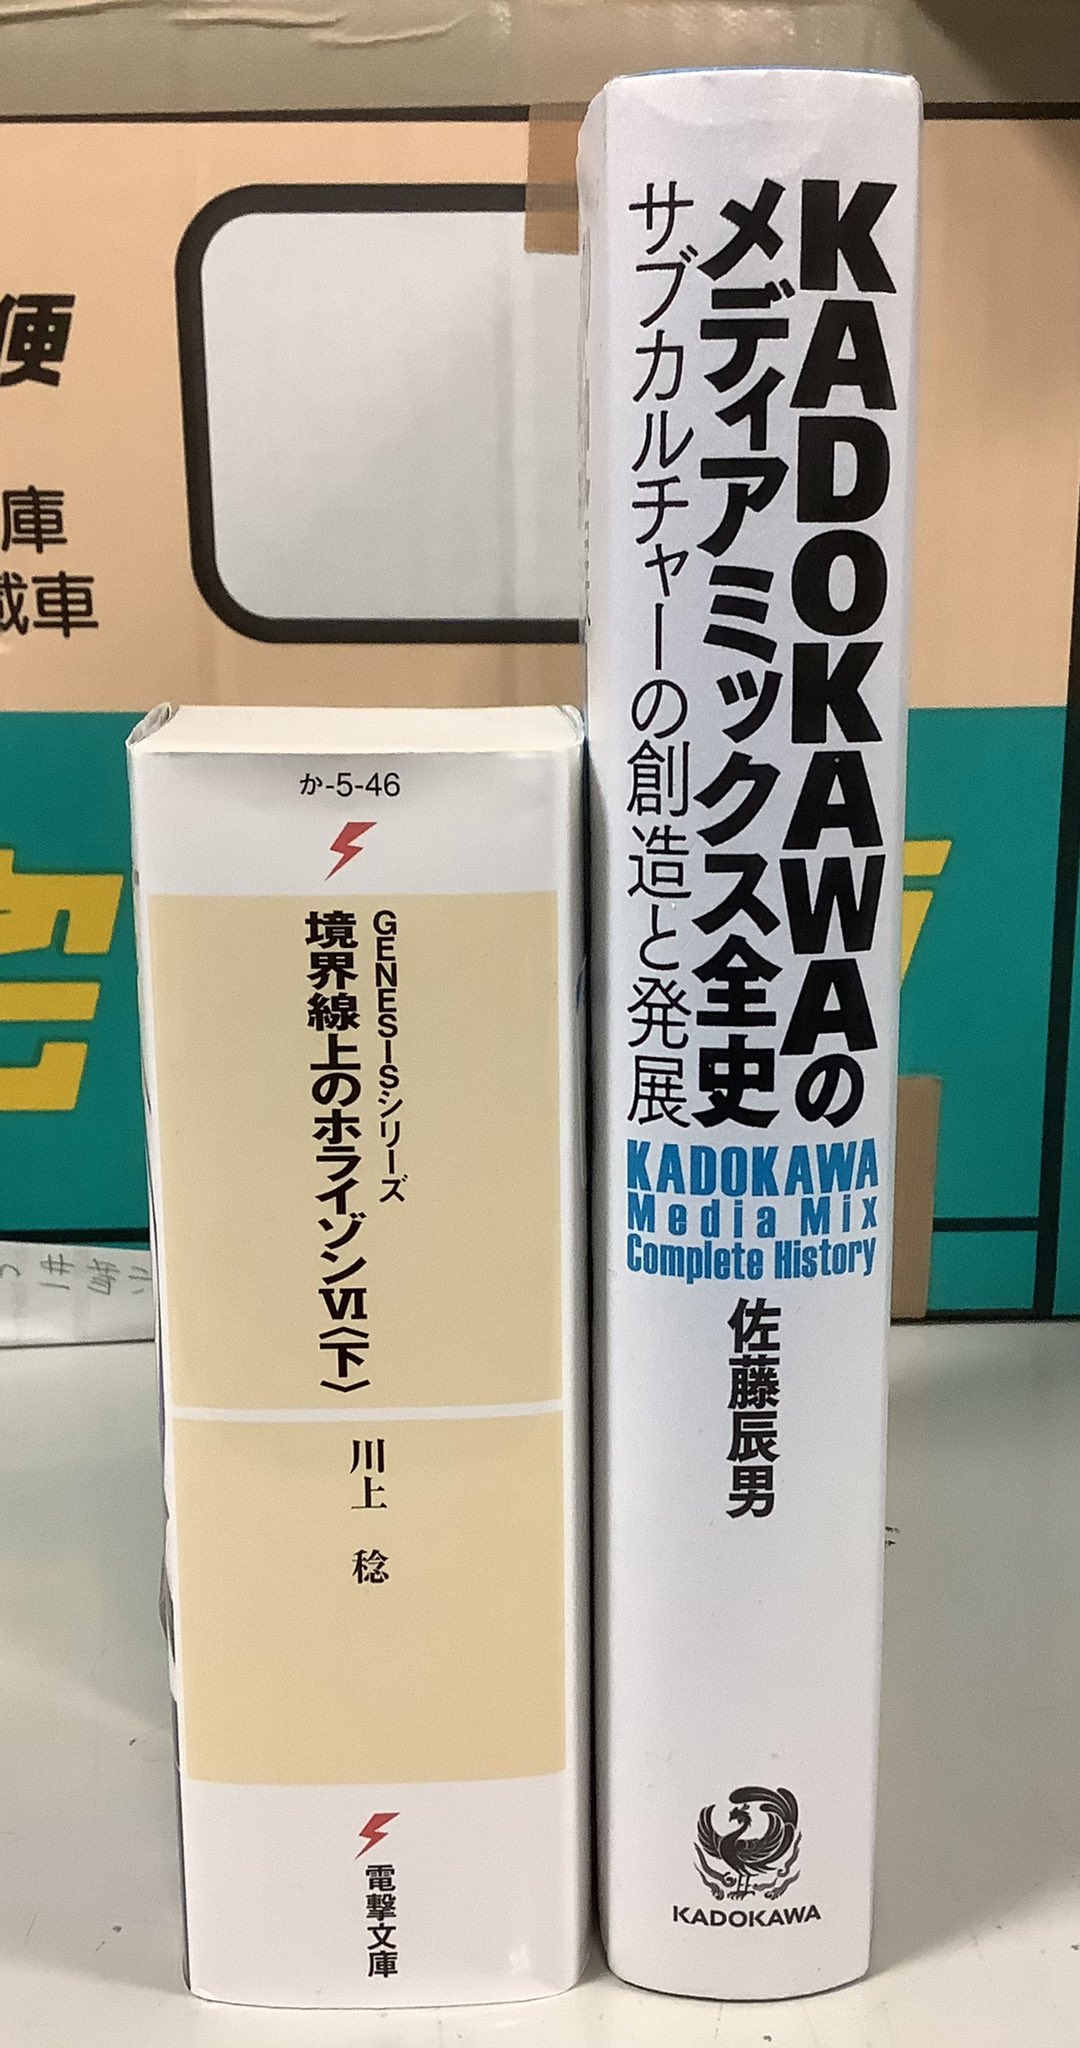 KADOKAWAのメディアミックス全史 サブカルチャーの創造と発展